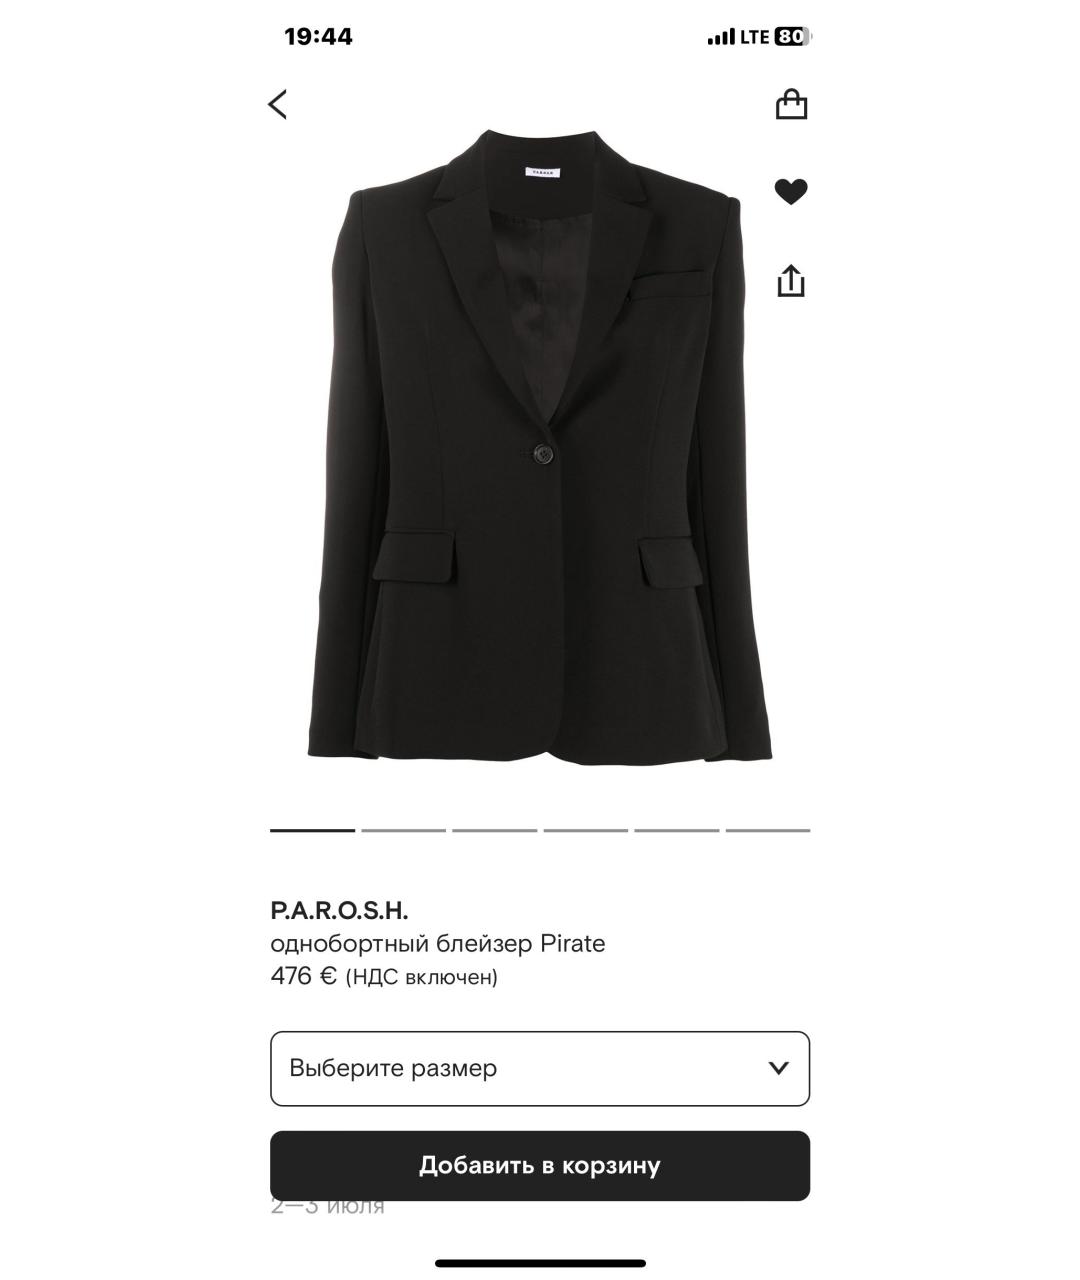 P.A.R.O.S.H. Черный полиэстеровый жакет/пиджак, фото 6